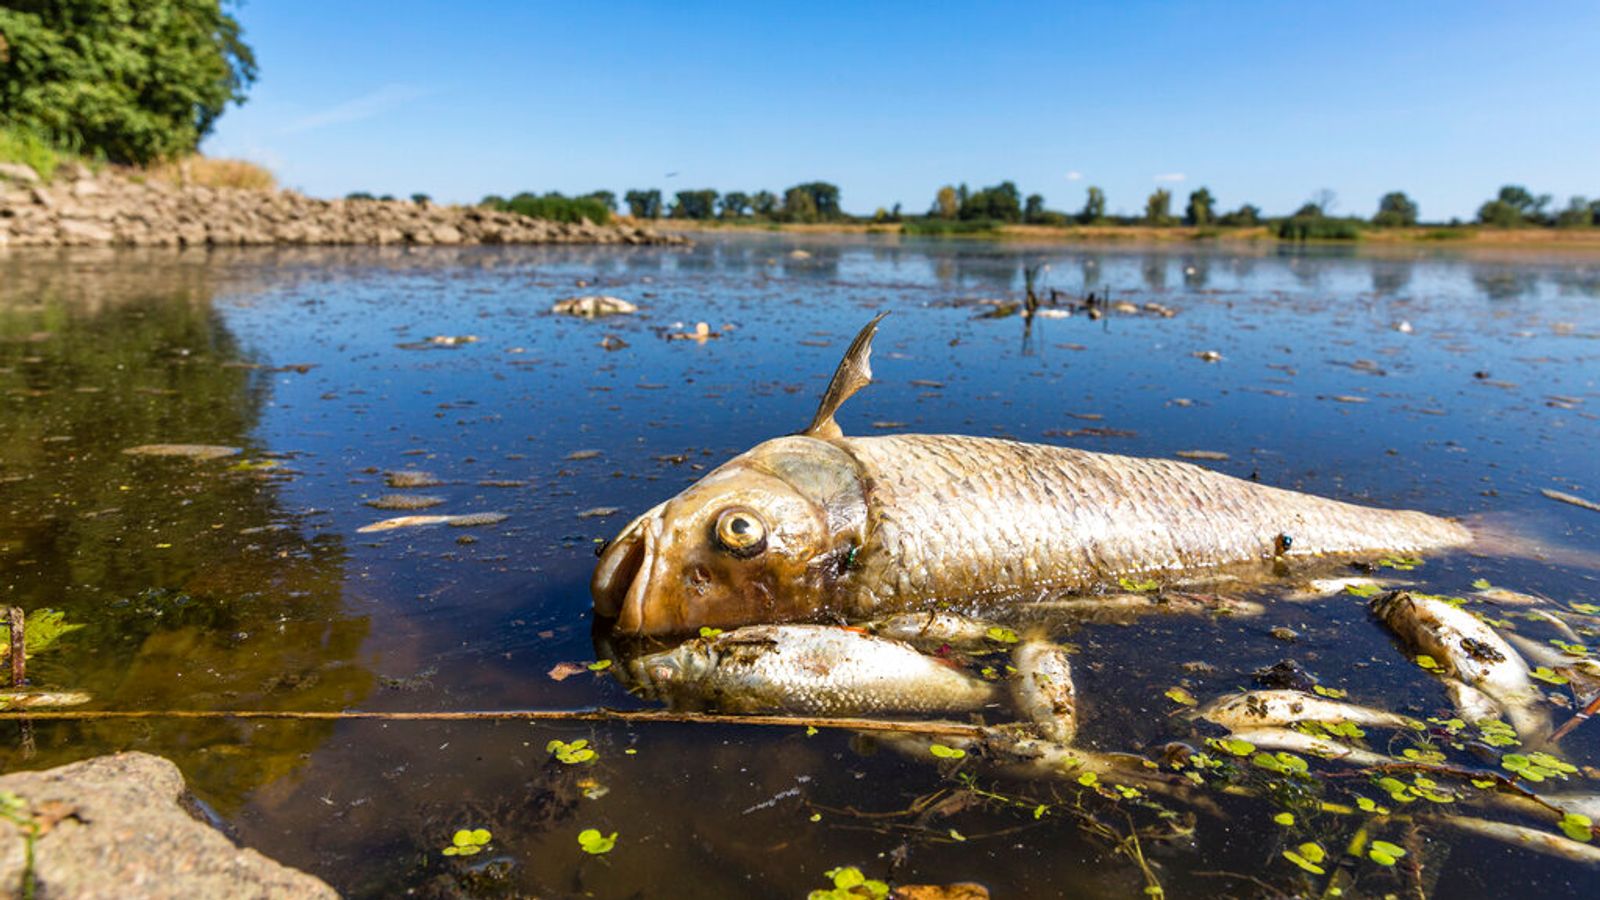 Tonnenweise toter Fisch aus der Oder in Polen geborgen, Beamte warnen vor möglicher Kontamination |  Weltnachrichten